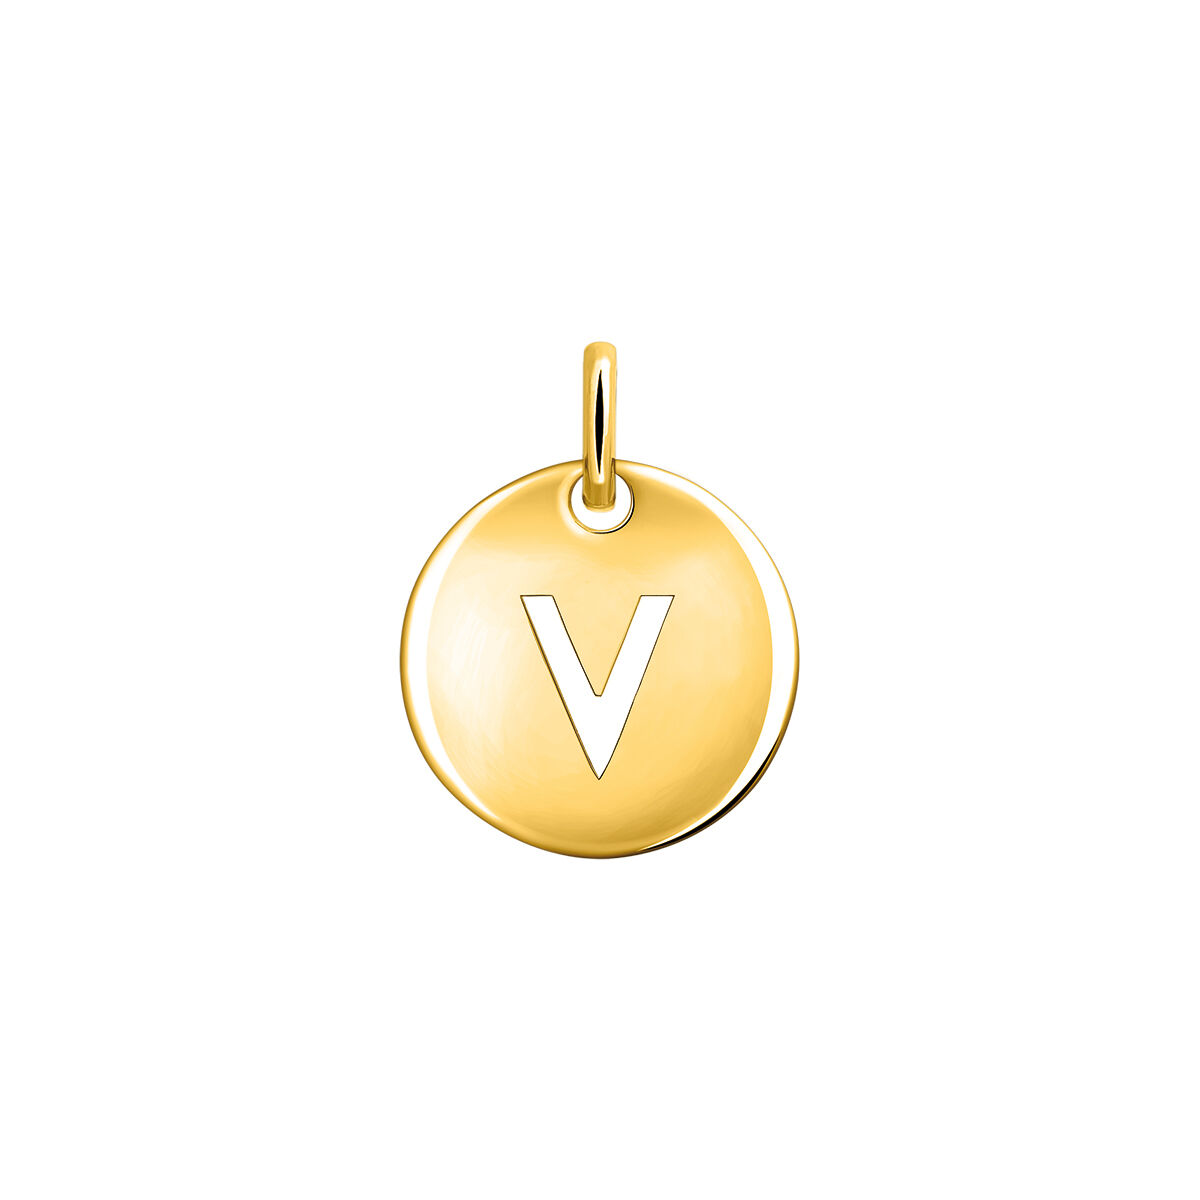 Charm medalla inicial V plata recubierta oro  , J03455-02-V, mainproduct